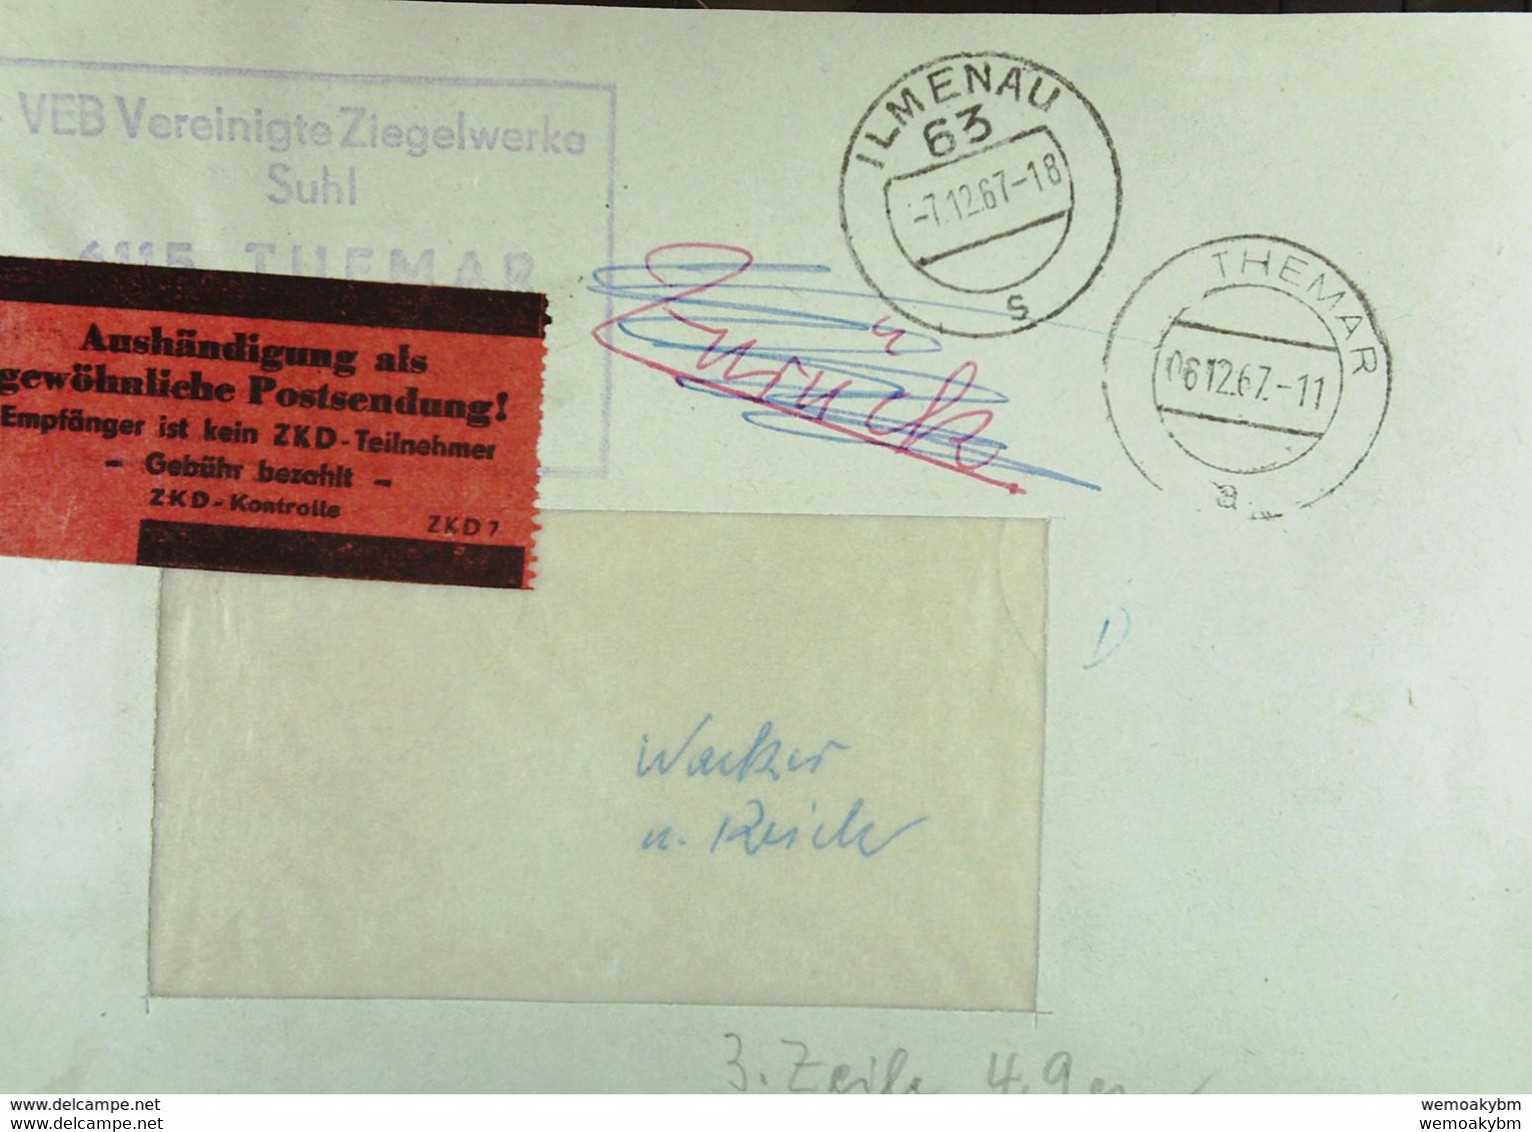 DDR: ZKD-Fern-Brf Mit ZKD-K-St. Und Rotem Aufkleber "Aushändigung Als Gew. Postsendung!.." Themar 6.12.67 Knr: AFS,ZKD 7 - Central Mail Service